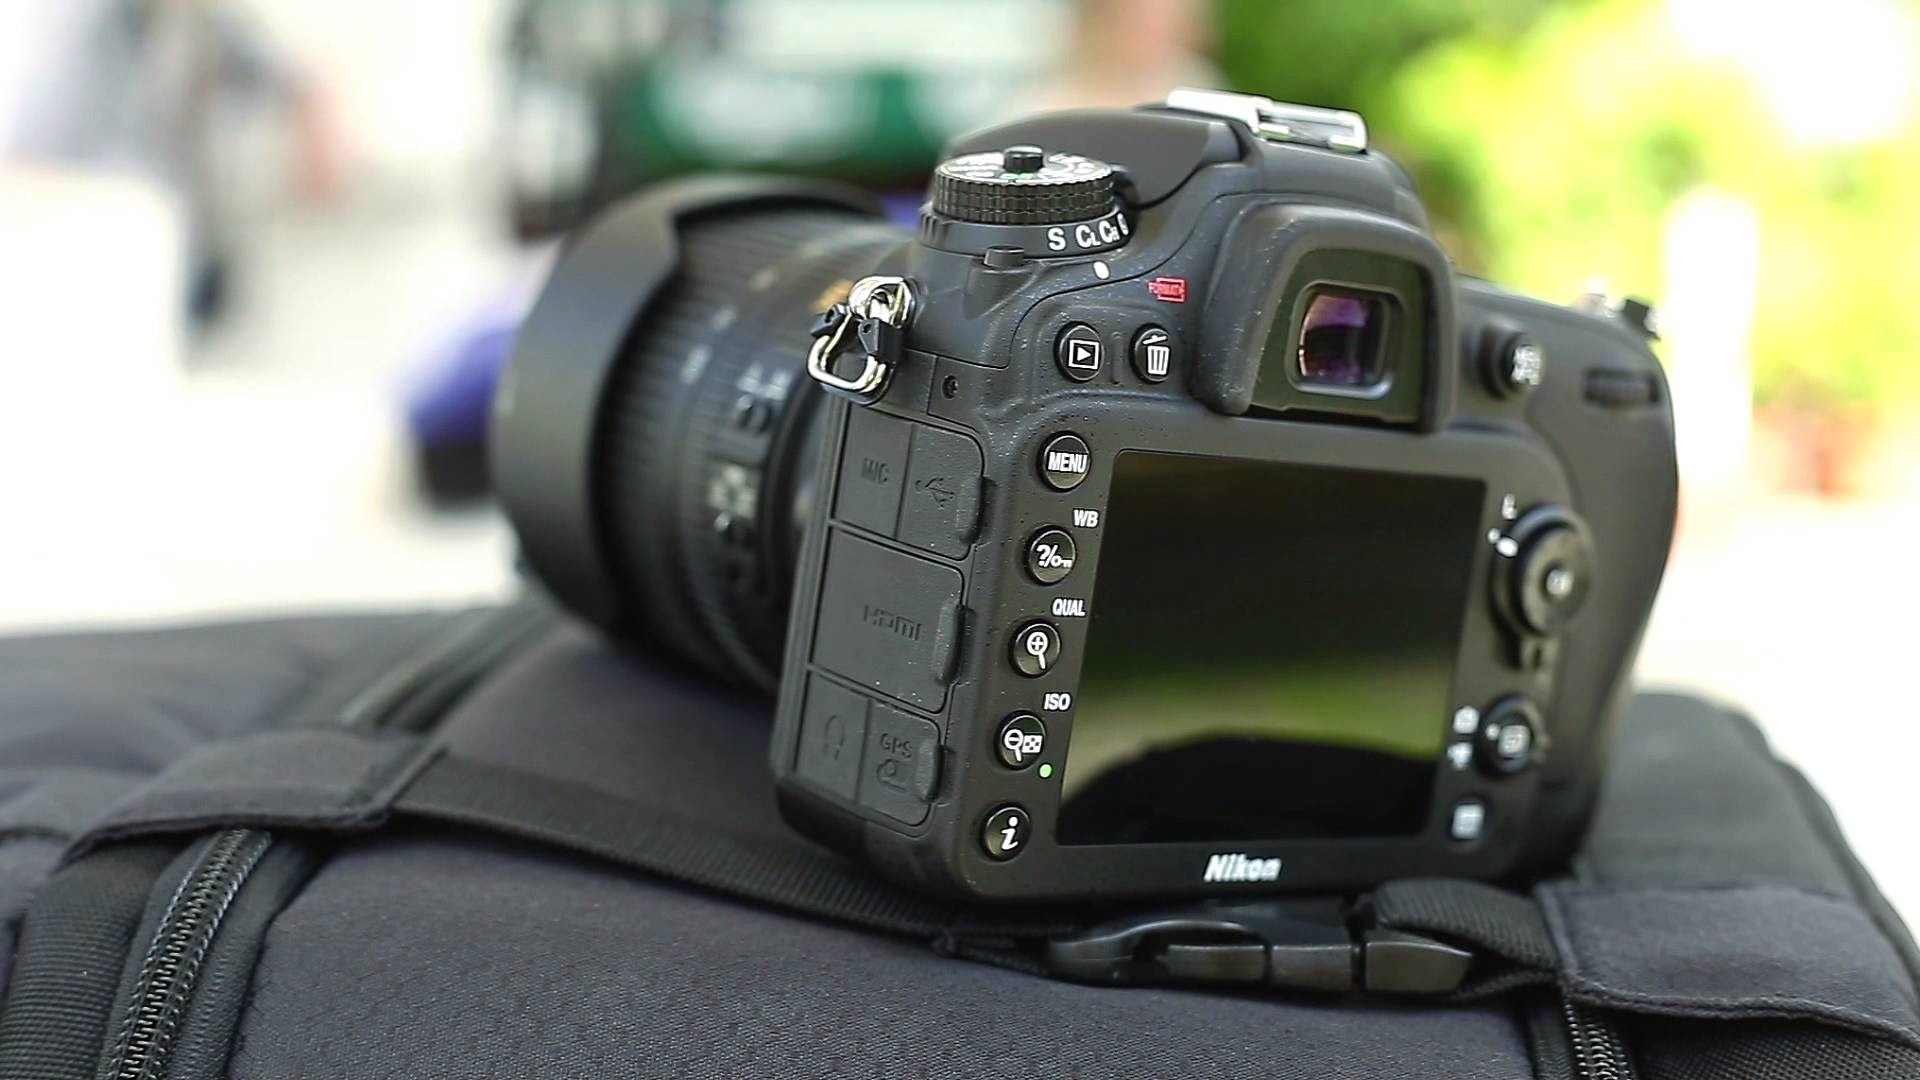 ¿Cómo elegir una cámara SLR (DSLR)?